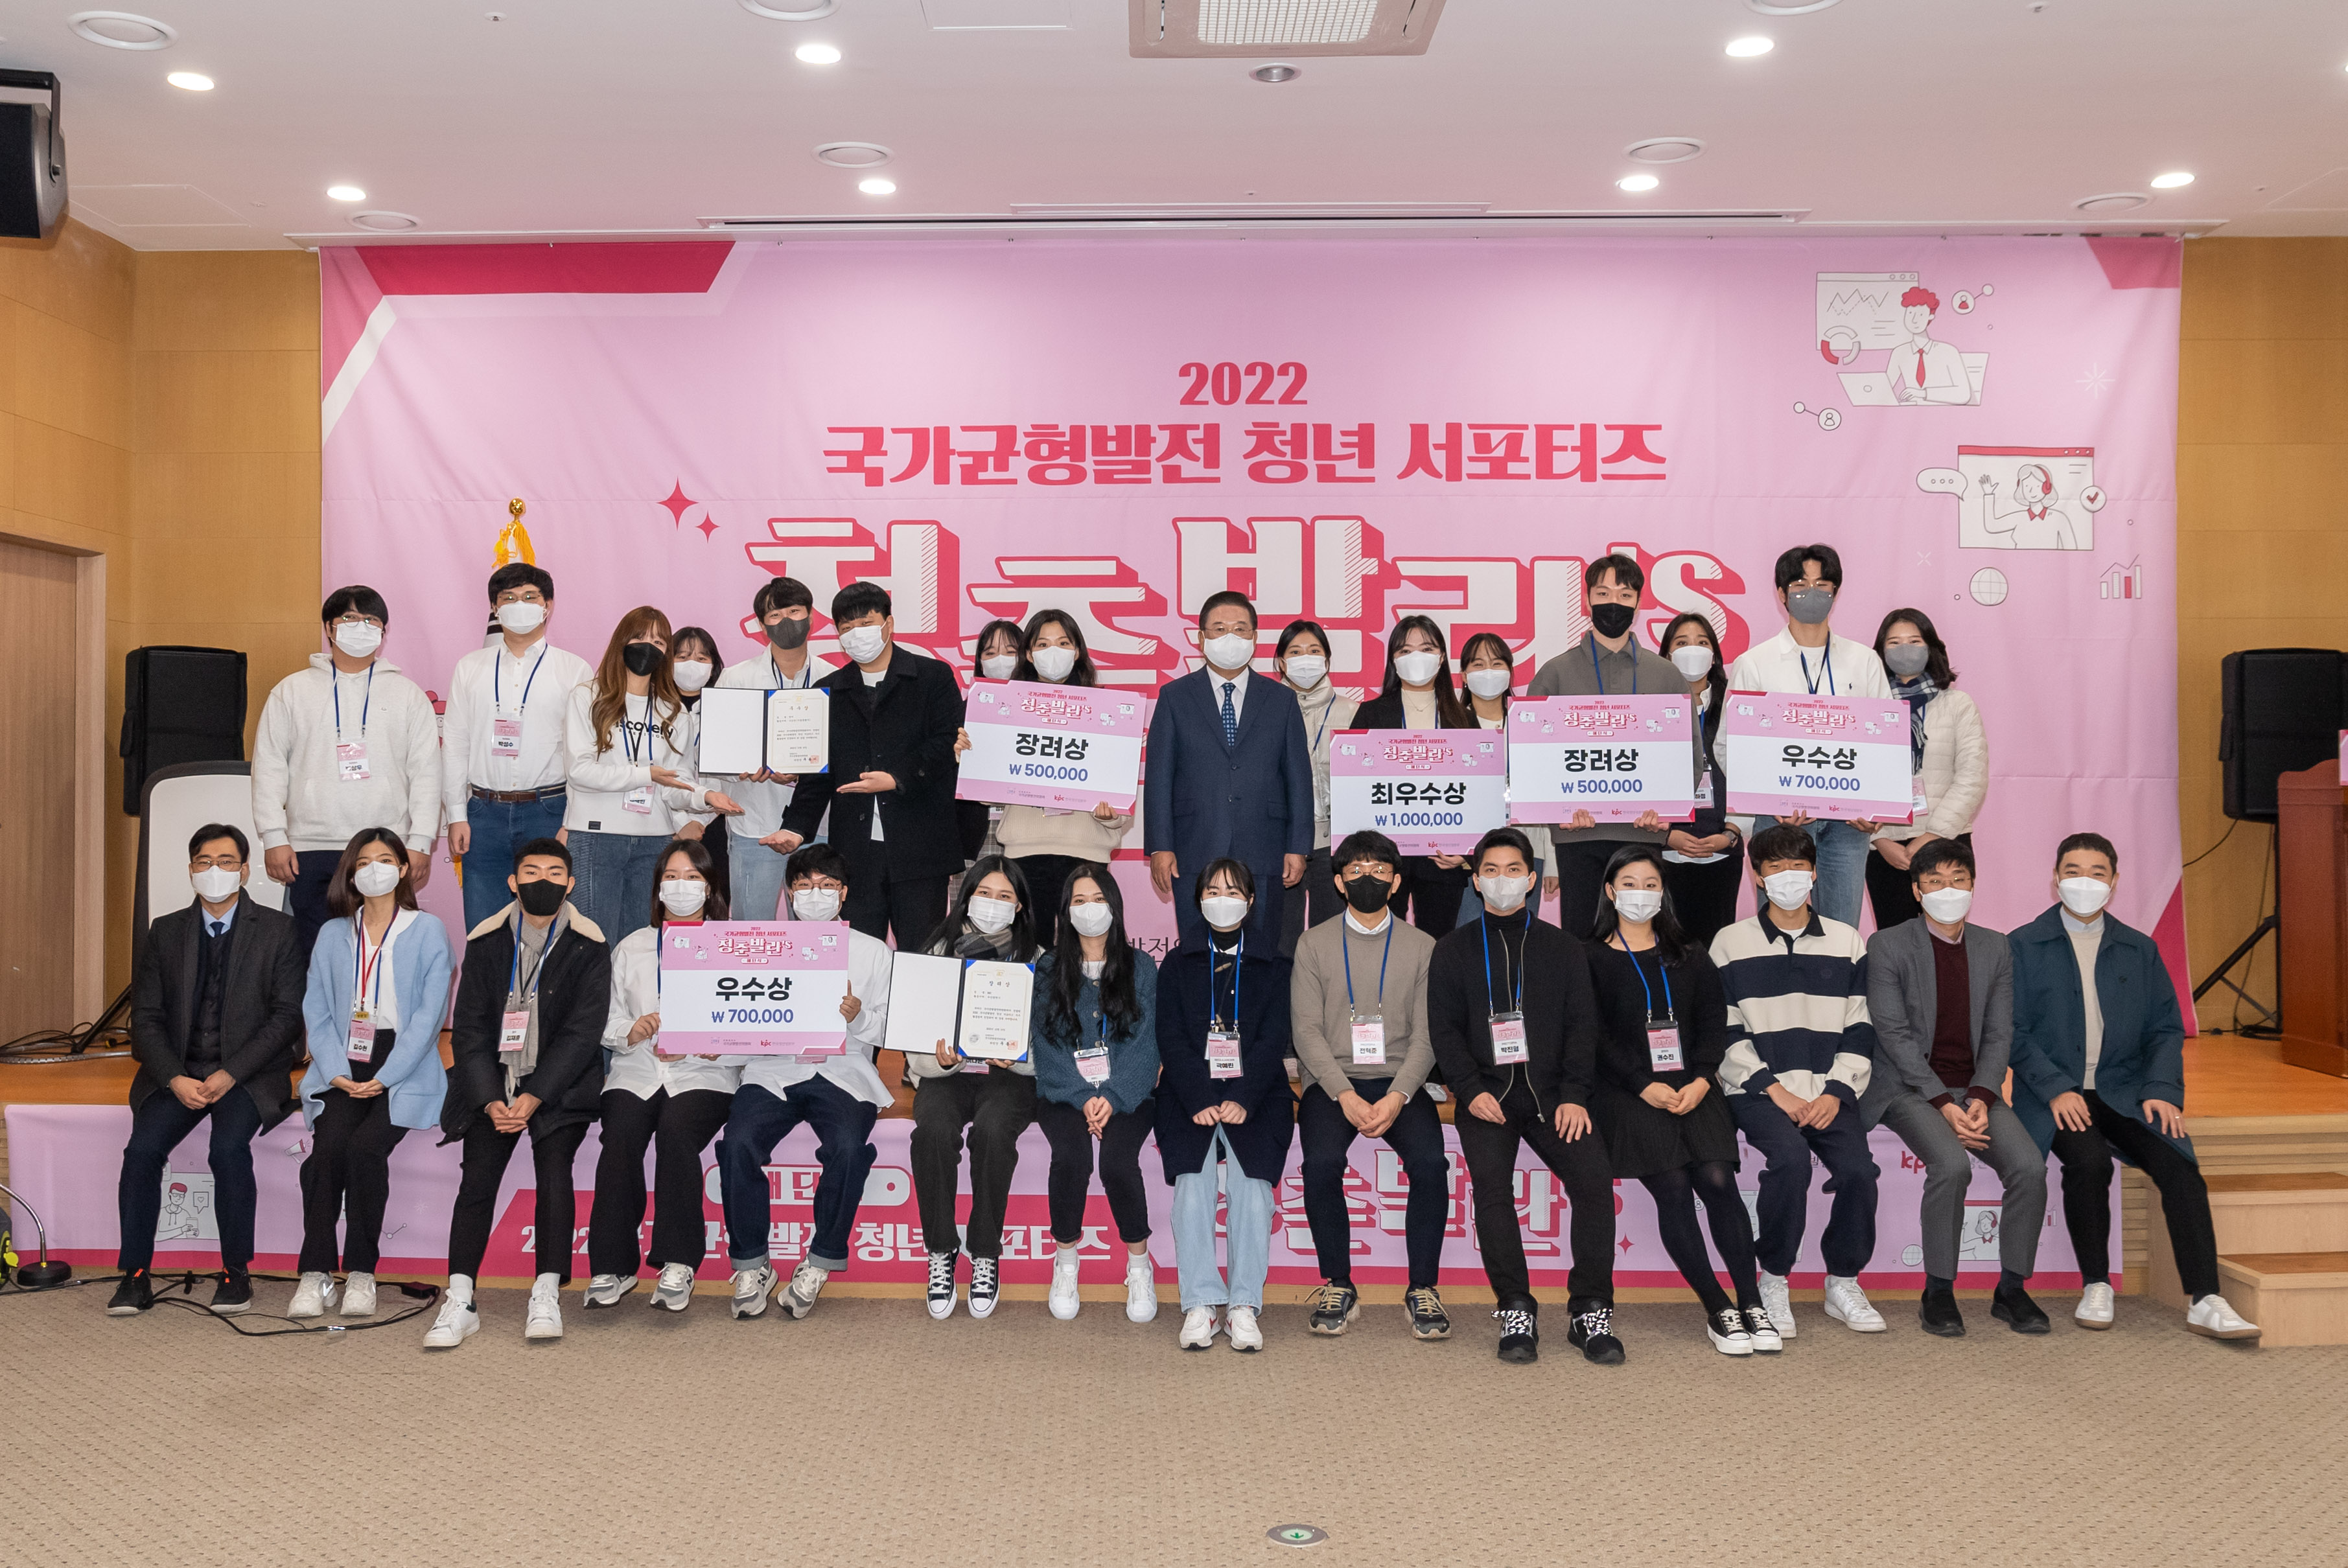 2022 국가균형발전 청년 서포터즈 청춘발란's 해단식이 열렸다.